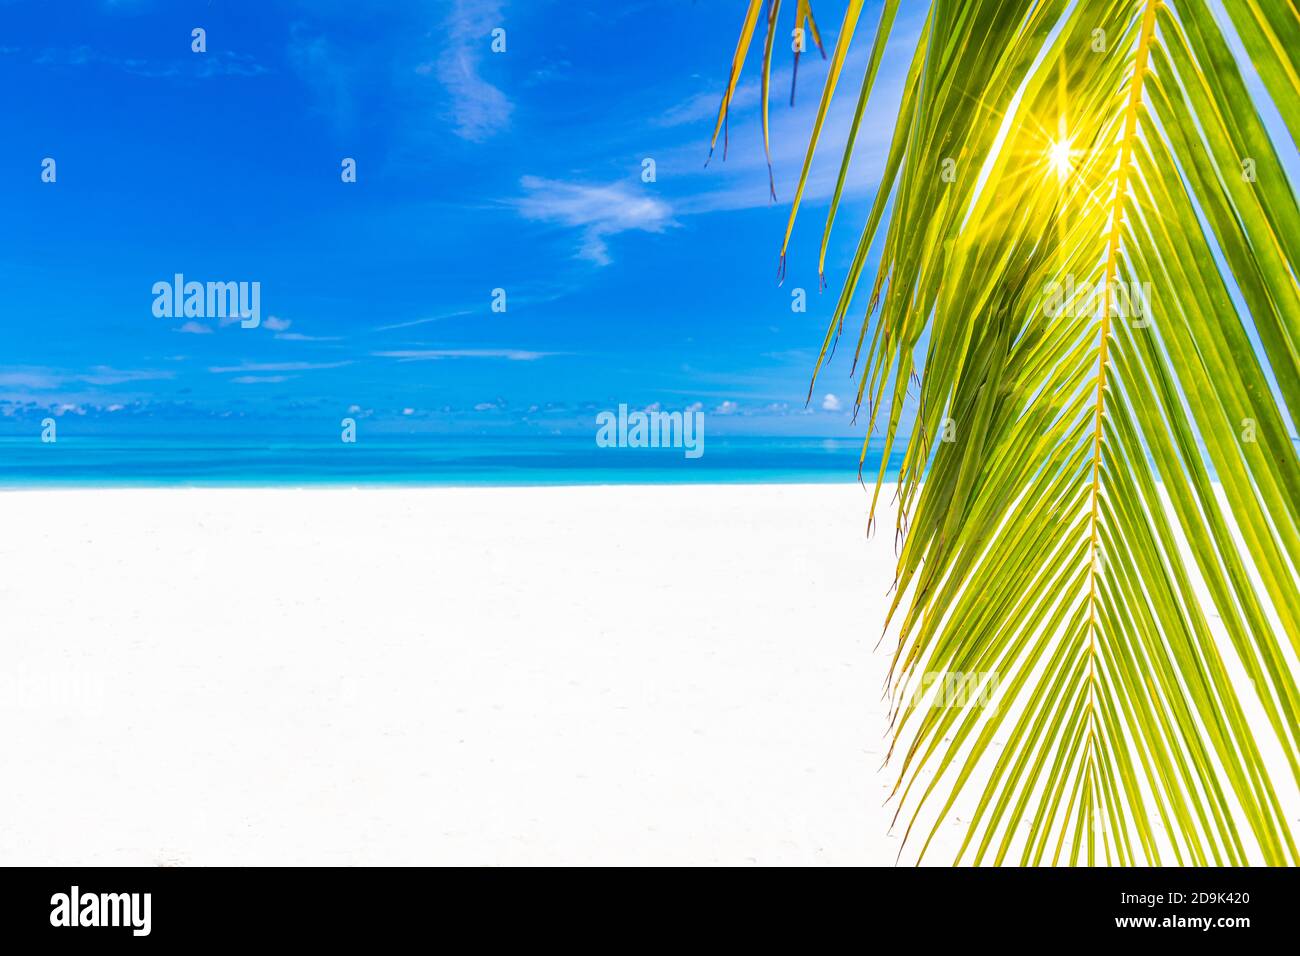 Spiaggia di palme e tropicali, tranquillo paesaggio naturale. Mare, sabbia bianca vicino al mare sotto il cielo blu. Splendido paesaggio estivo Foto Stock